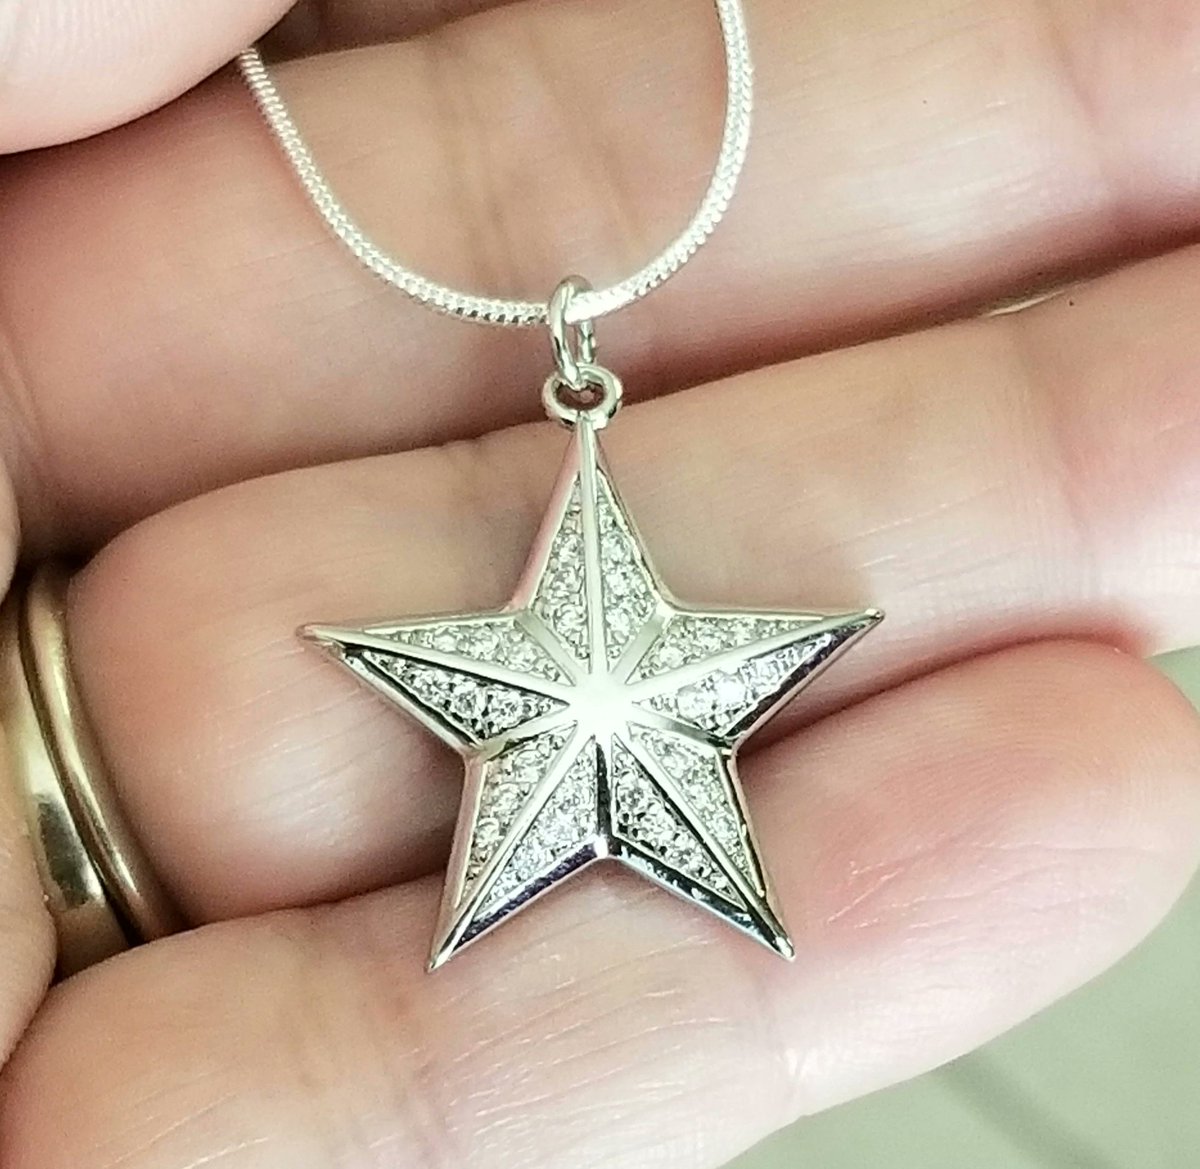 Silver Star Necklace, Star Pendant Necklace, #StarNecklace #jewelry #necklace #necklaces #handmadejewelry #silvernecklace #sterlingsilver #sterlingsilvernecklace #giftsforher #giftsformom #momgifts #momgift #Mothersday #Mothersdaygifts #stars

etsy.me/43hRJNd via @Etsy